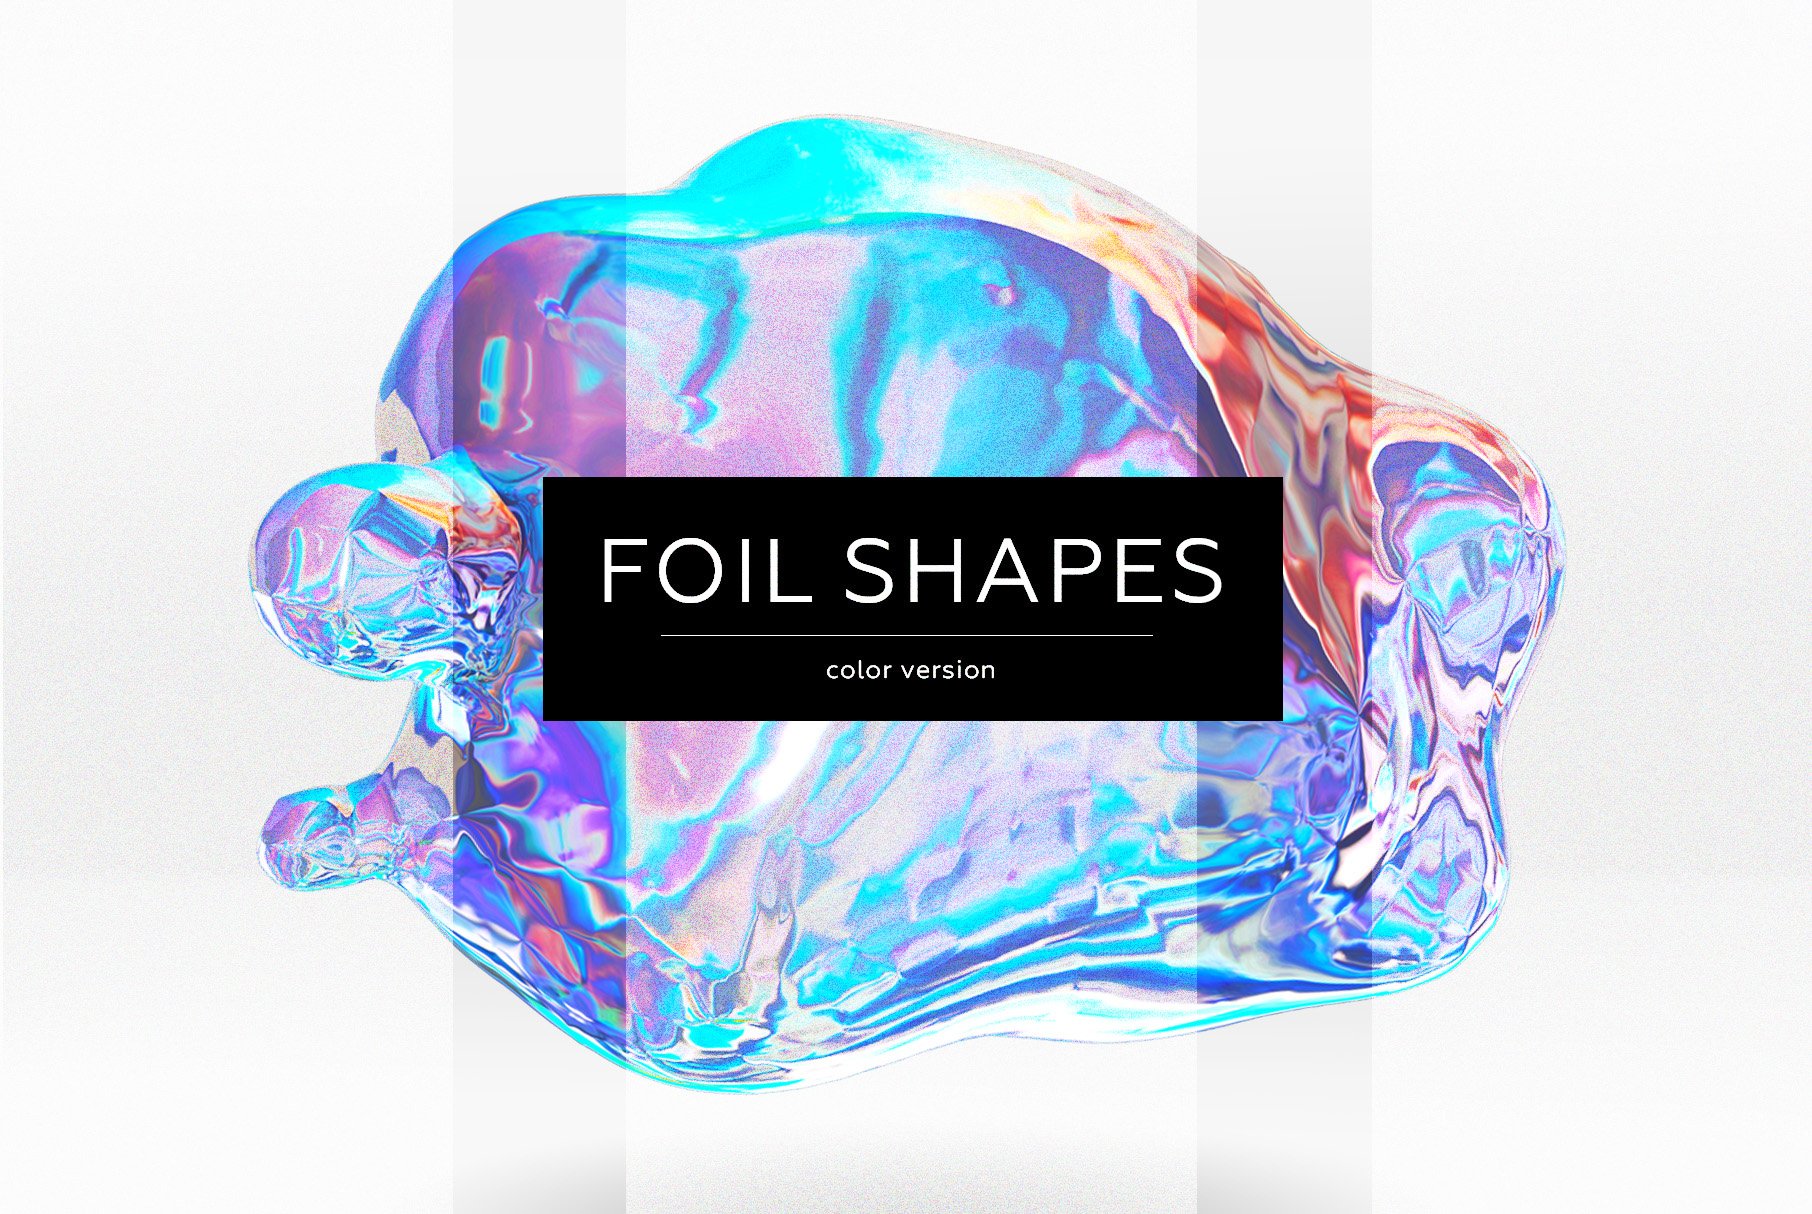 23款抽象全息渐变不规则碎裂3D水滴流体图形设计素材 FOIL SHAPES Color Version